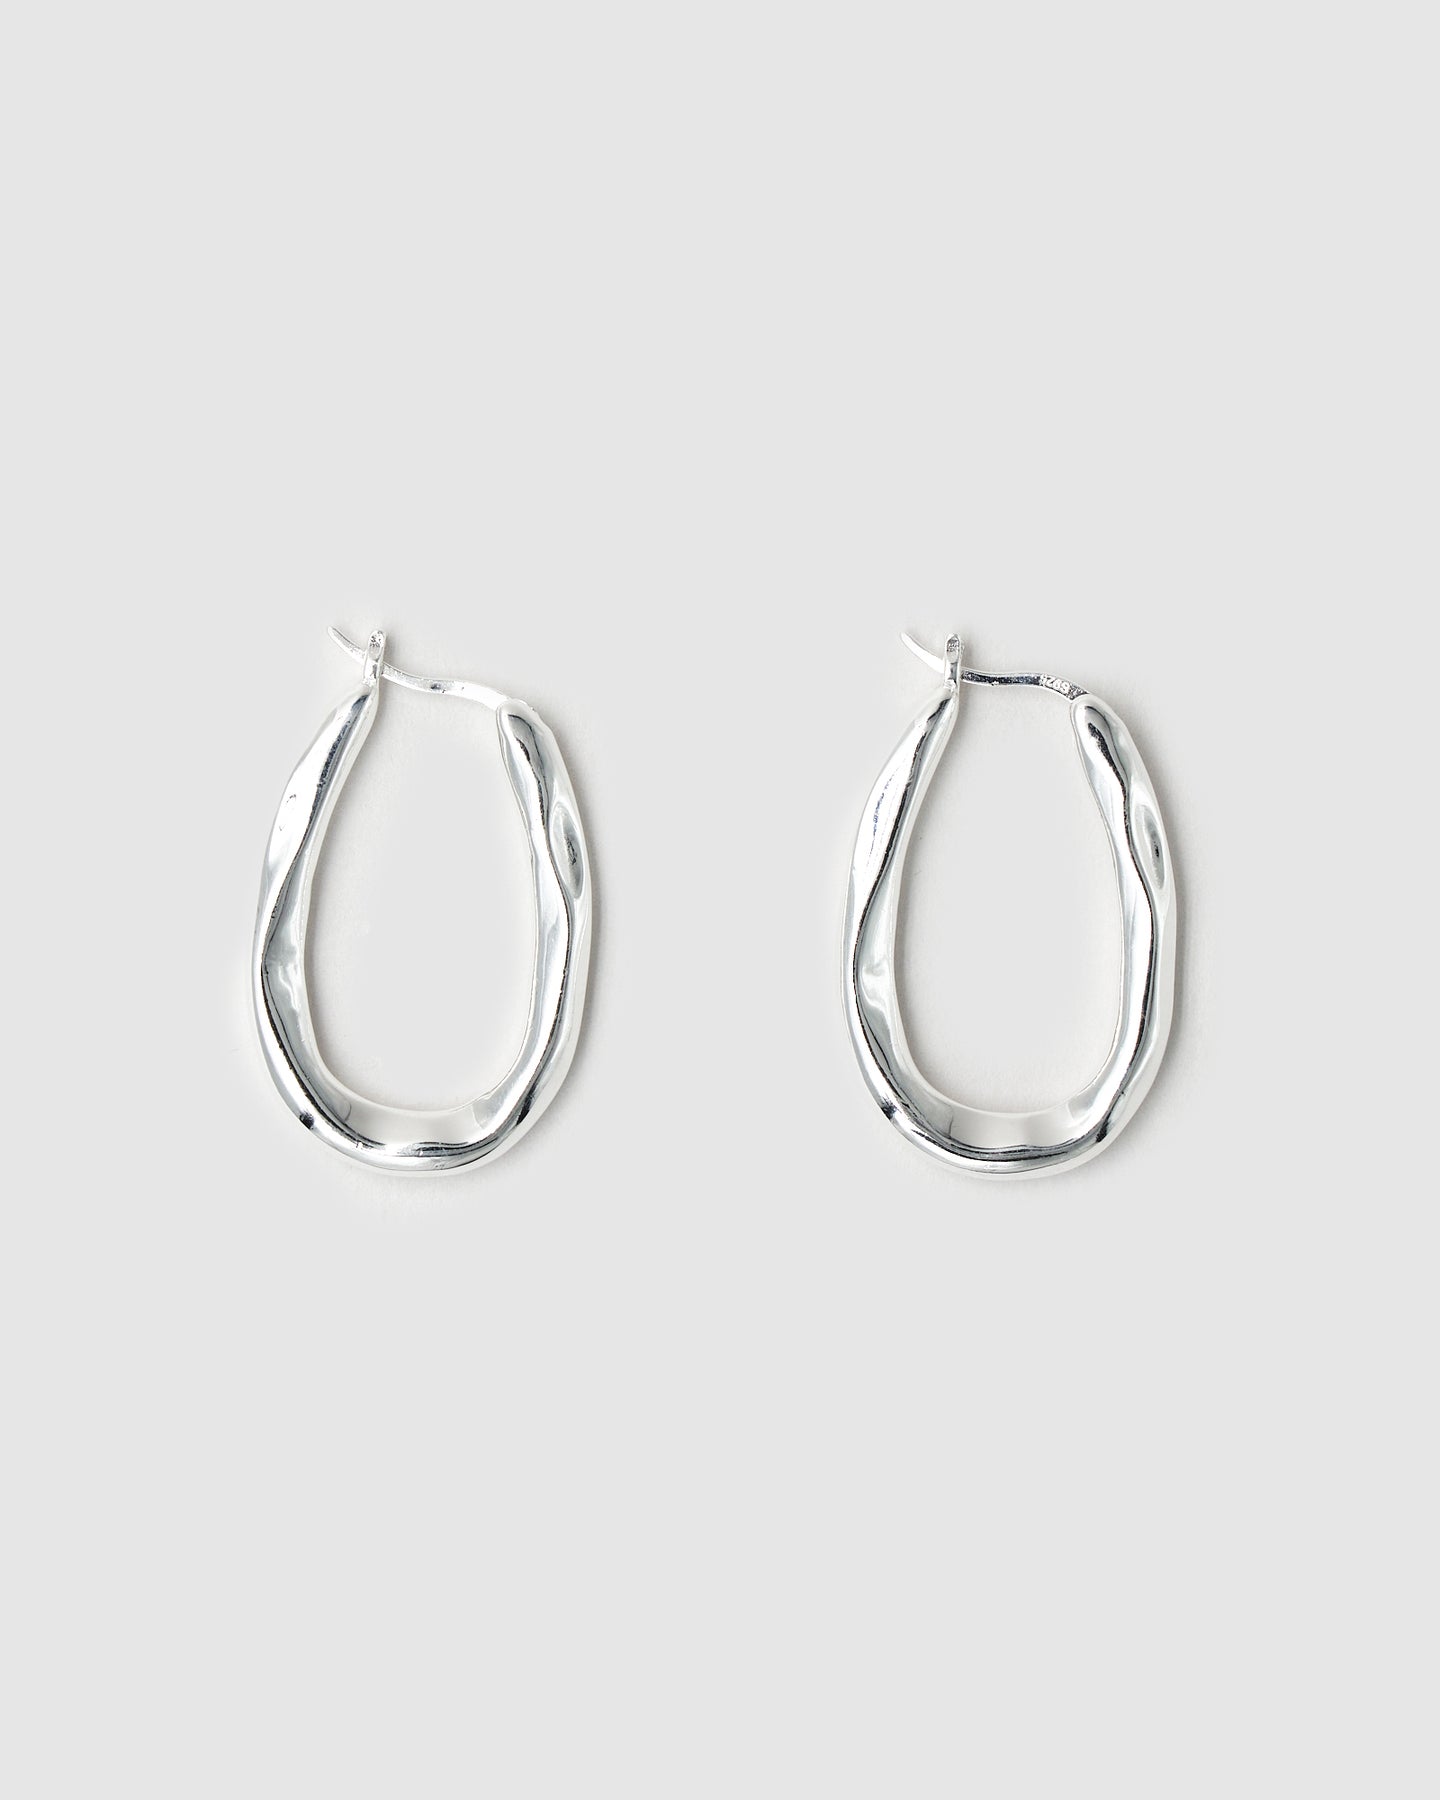 Organica Hoop Earrings - Large by BRIE LEON ⏤ Jewellery, Bags & Accessories